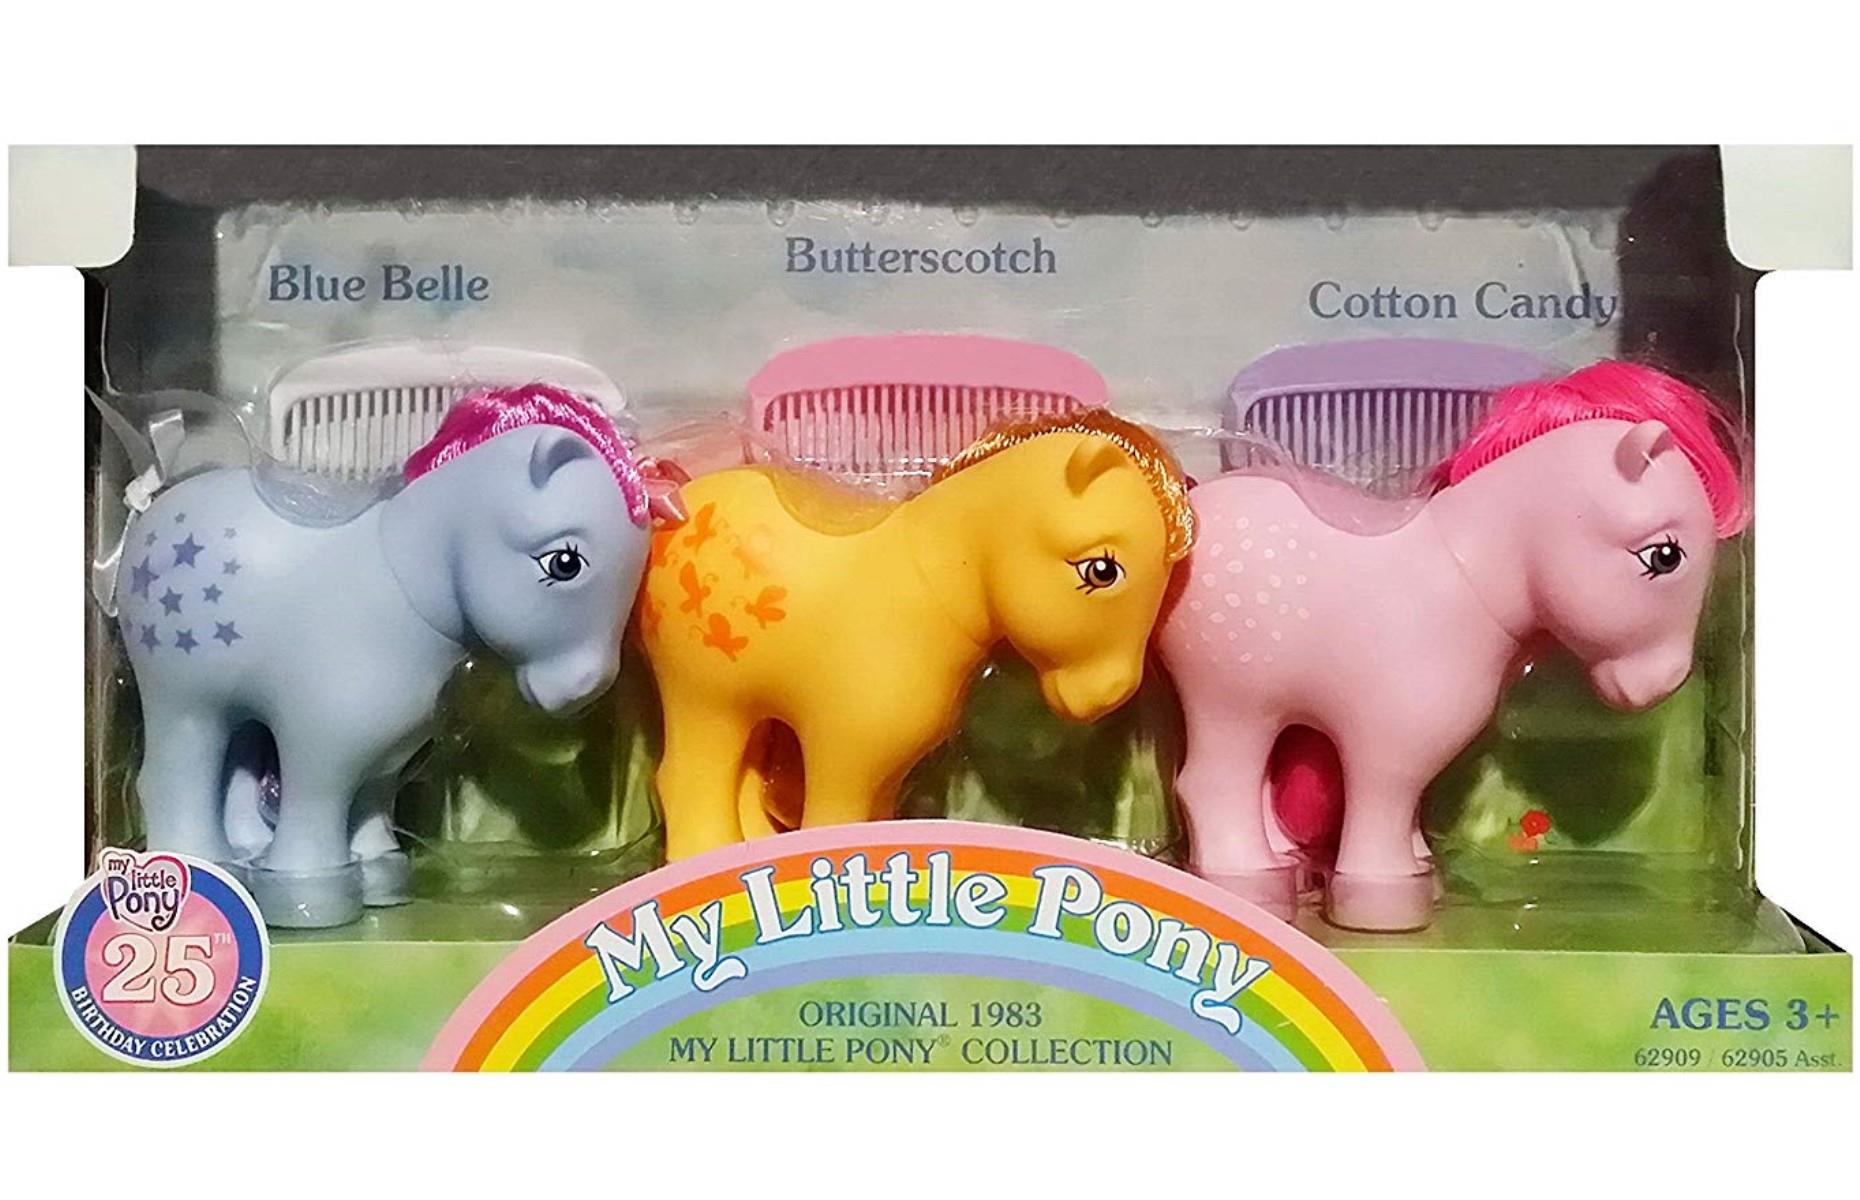 My Little Pony figures